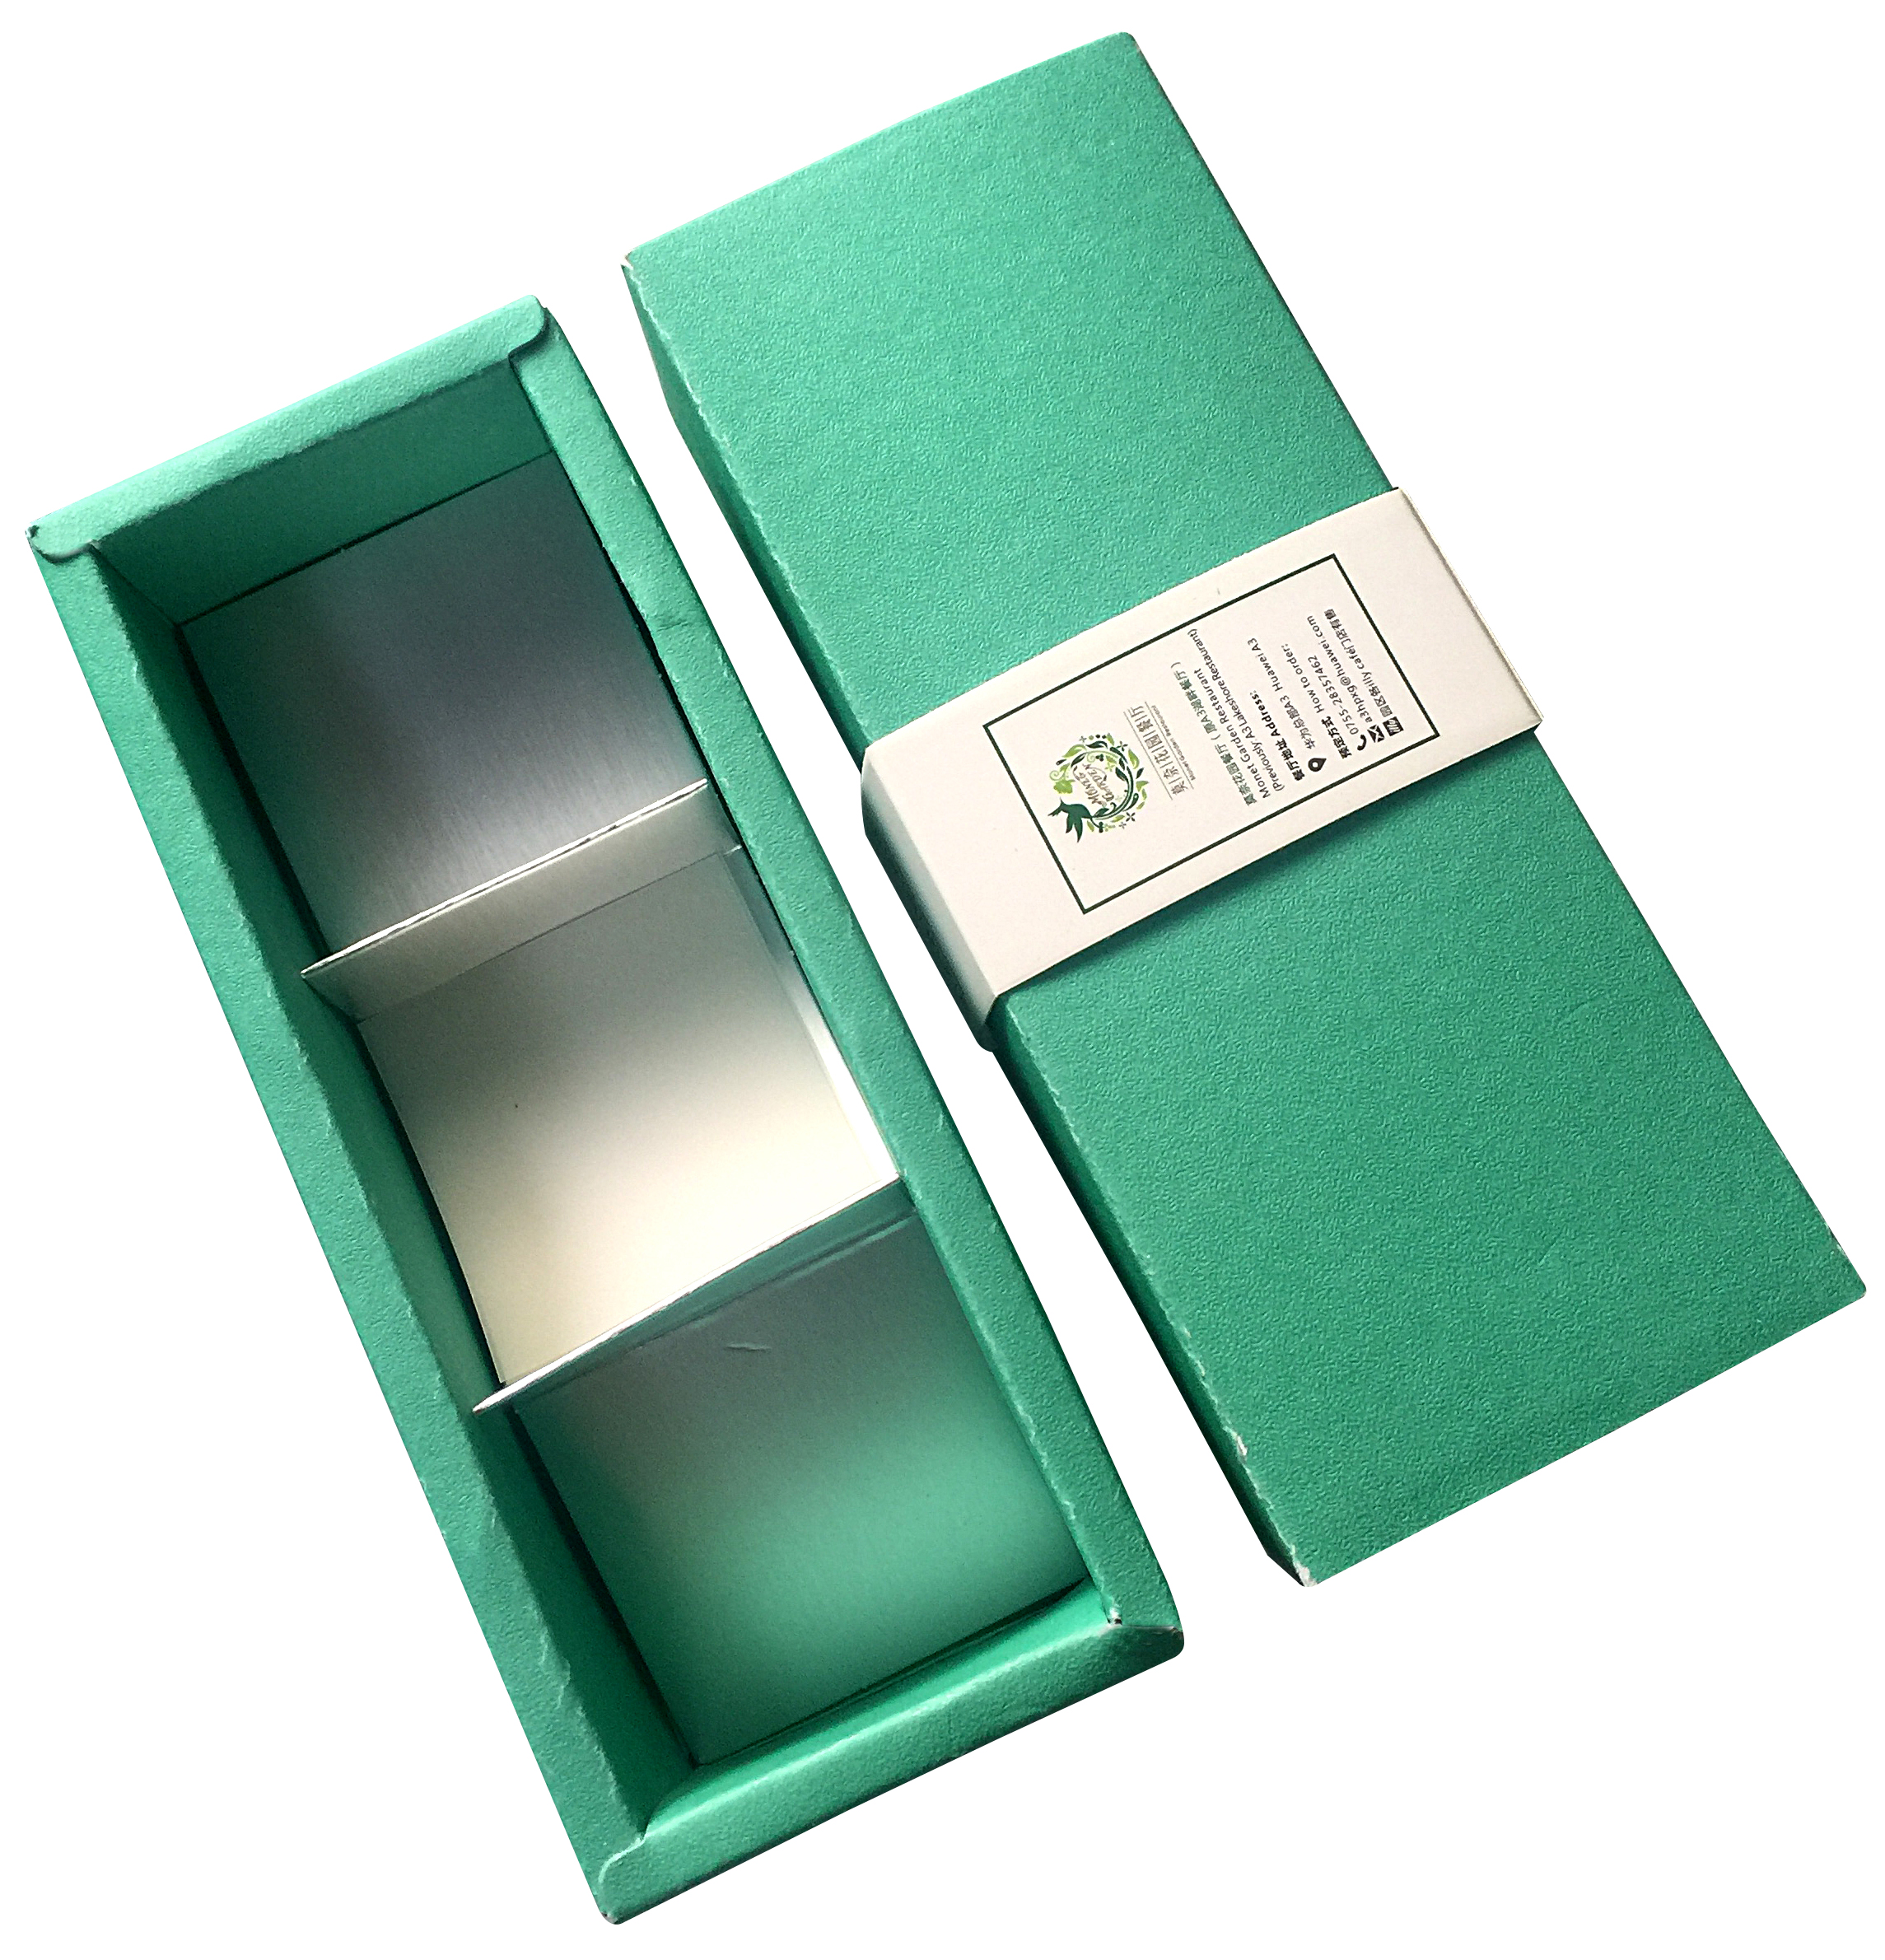 生产厂家 专业定制 抽屉彩盒定做 白卡纸通用折叠包装纸盒印刷 包装彩盒定做